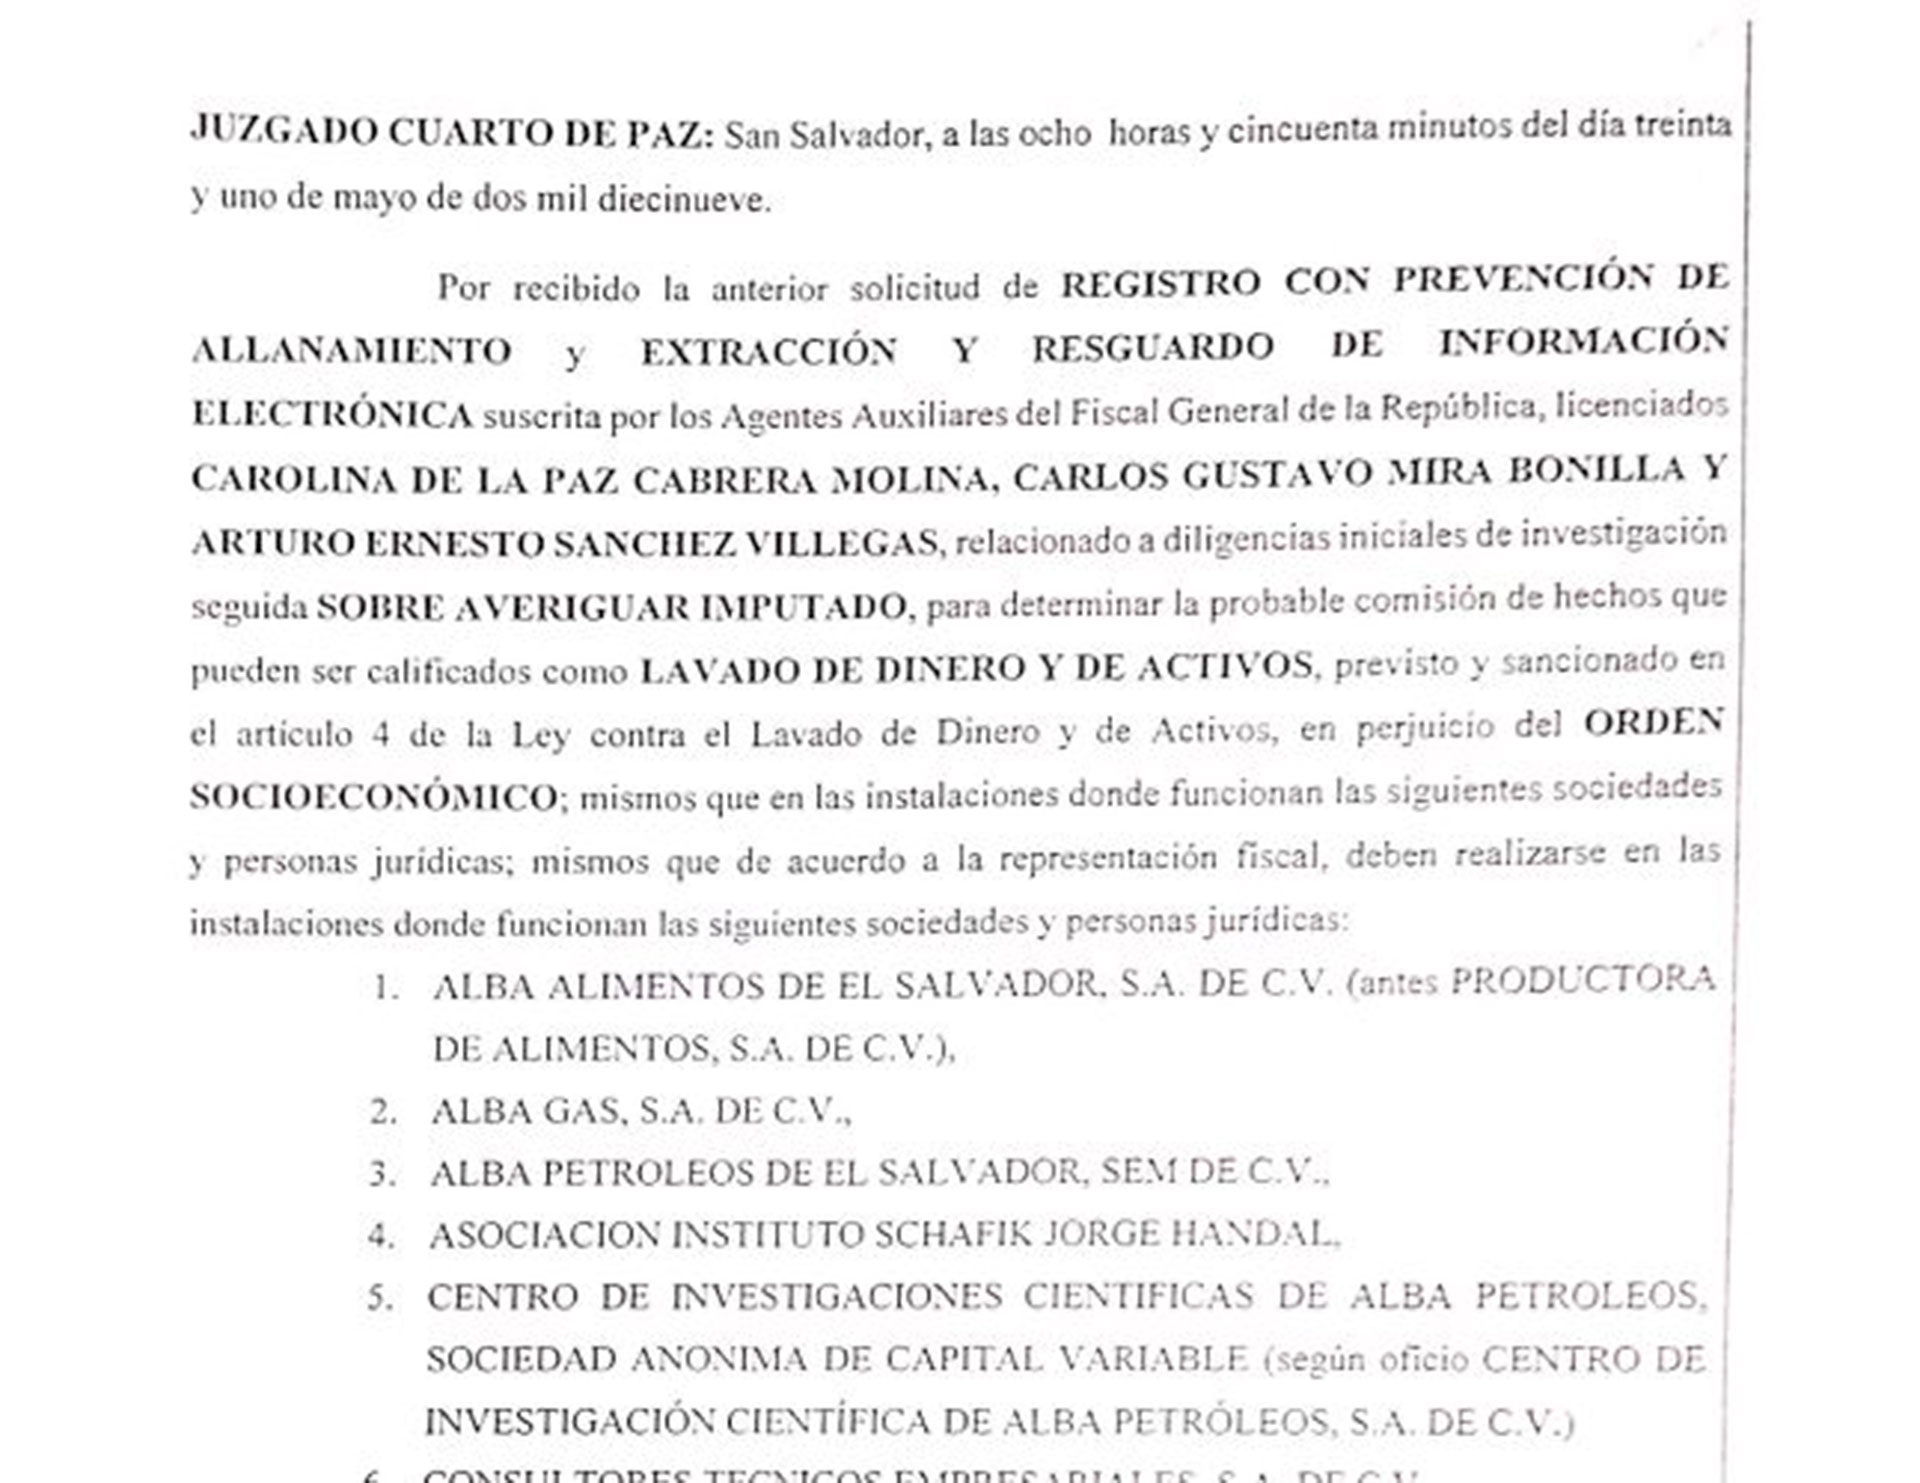 Extracto de documento judicial que autoriza allanamientos a empresas relacionadas con Alba Petróleos.